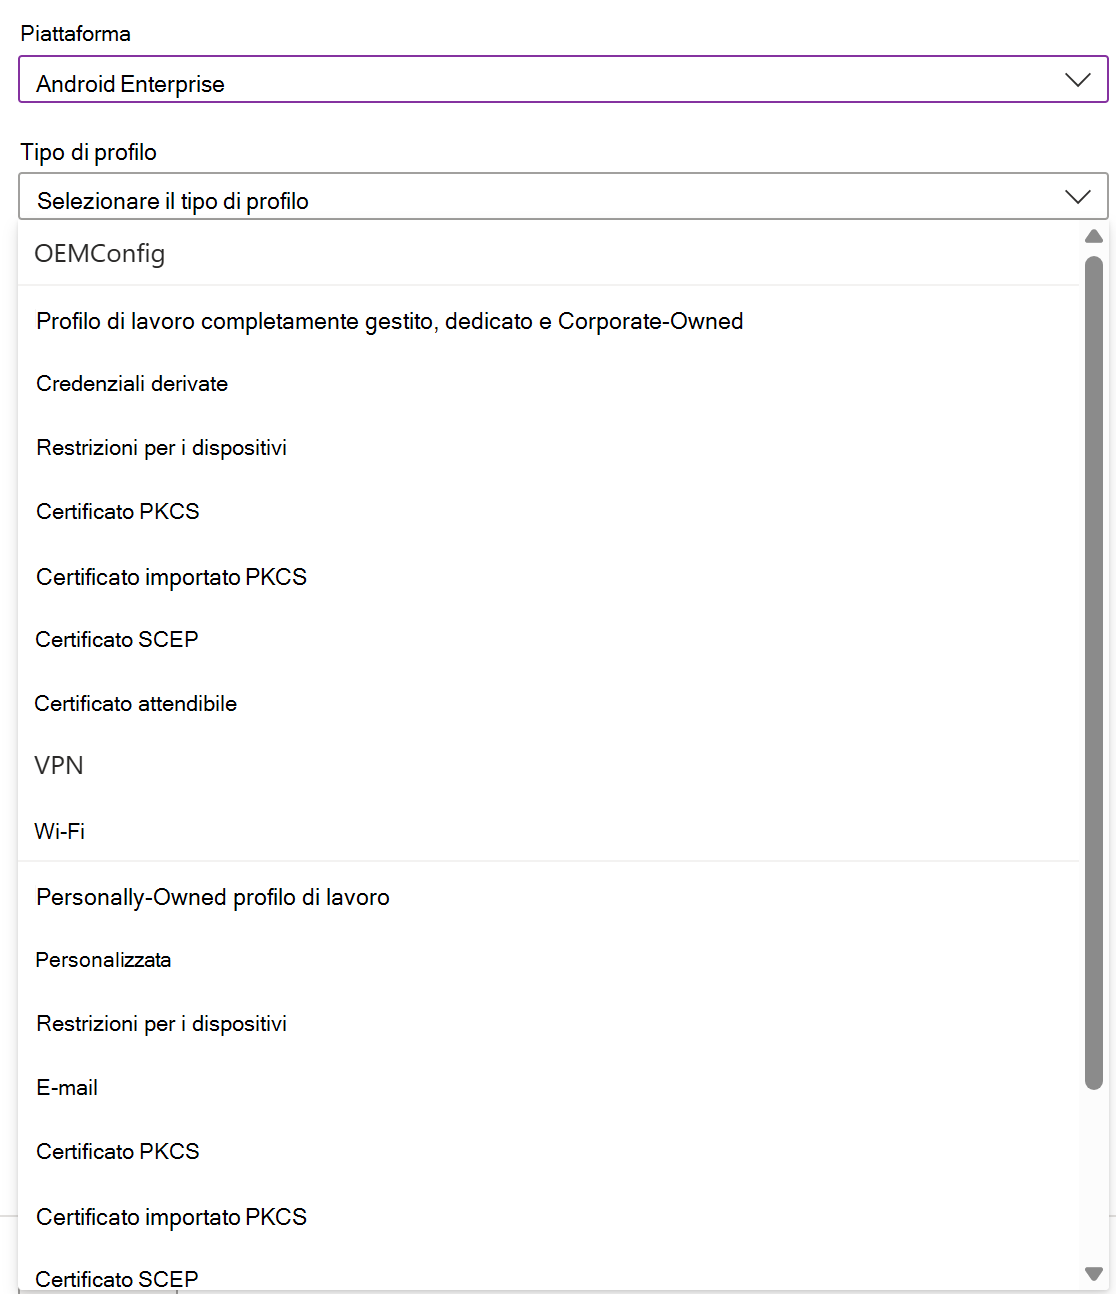 Screenshot che mostra come creare un profilo e un criterio di configurazione del dispositivo iOS/iPadOS in Microsoft Intune.